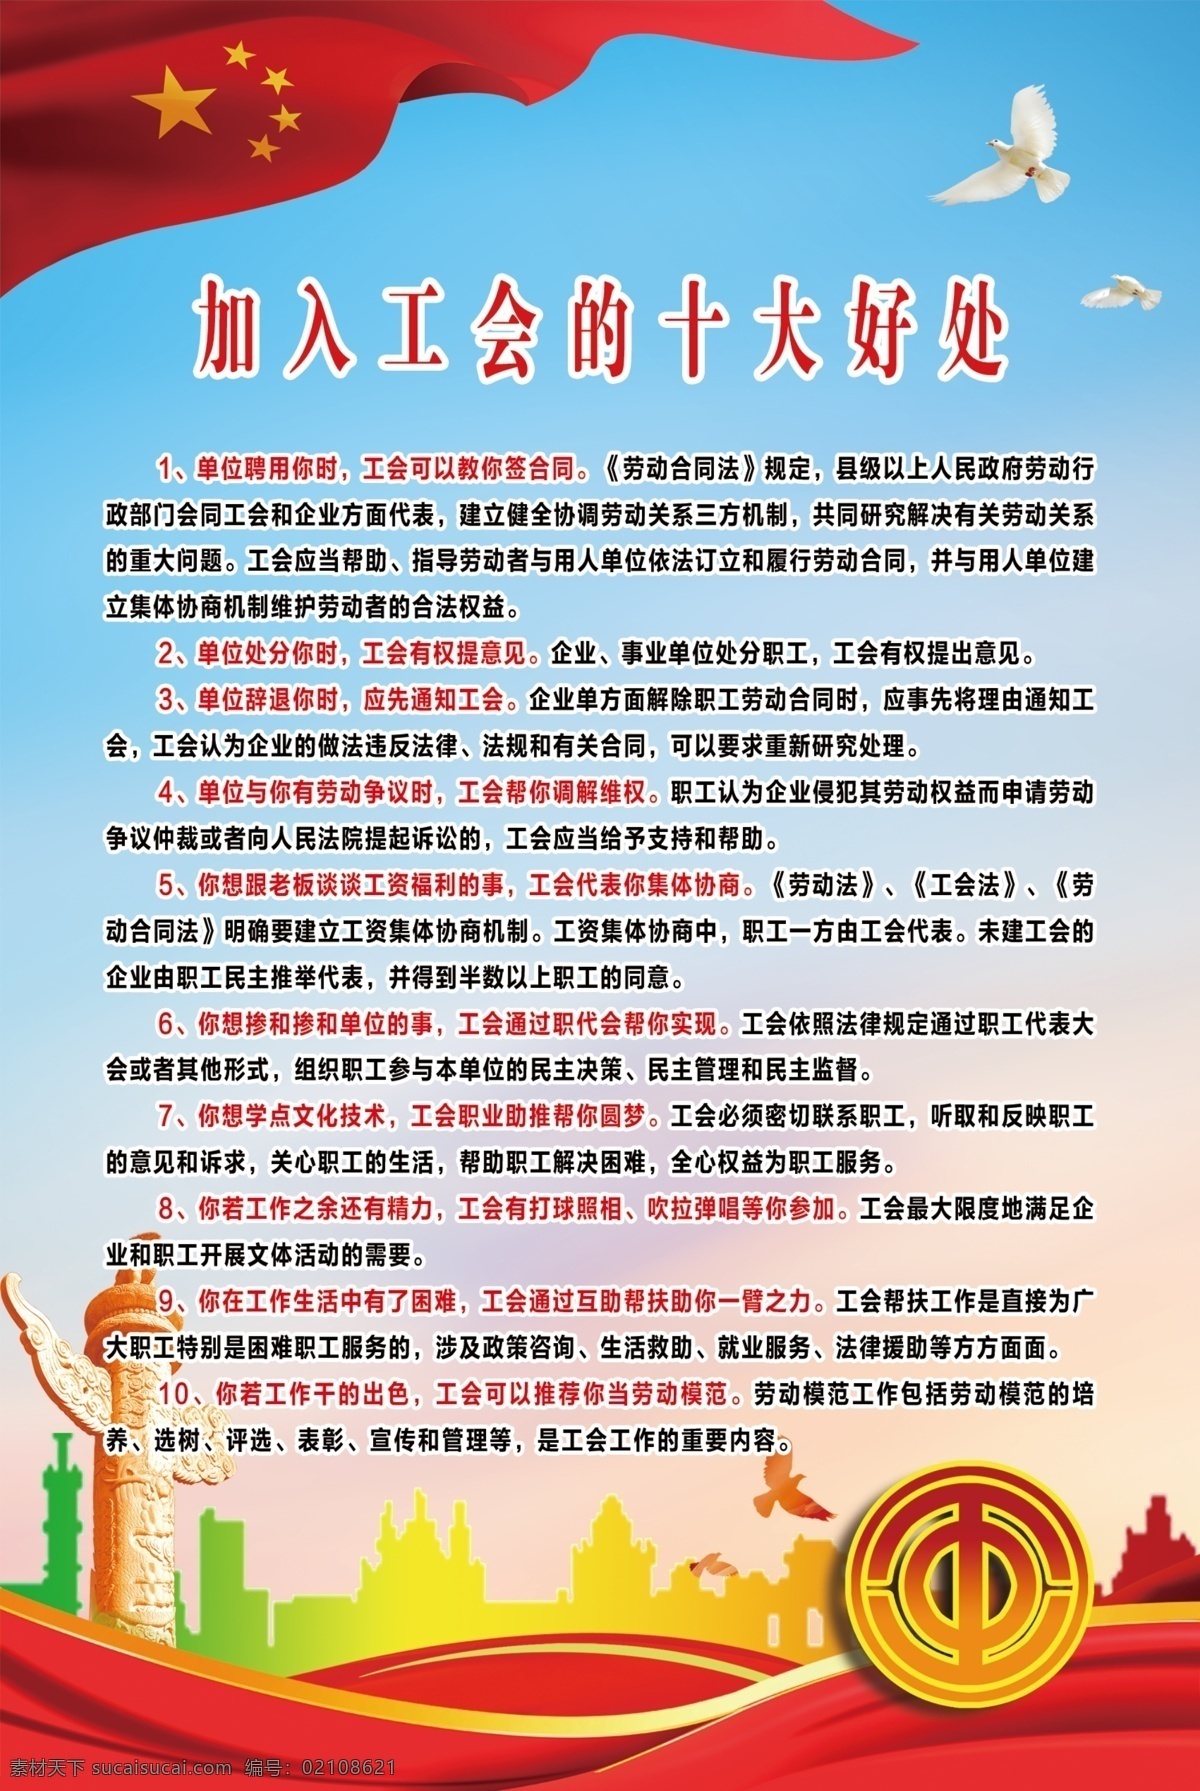 工会 加入工会好处 中国工会 十大好处 展板 海报